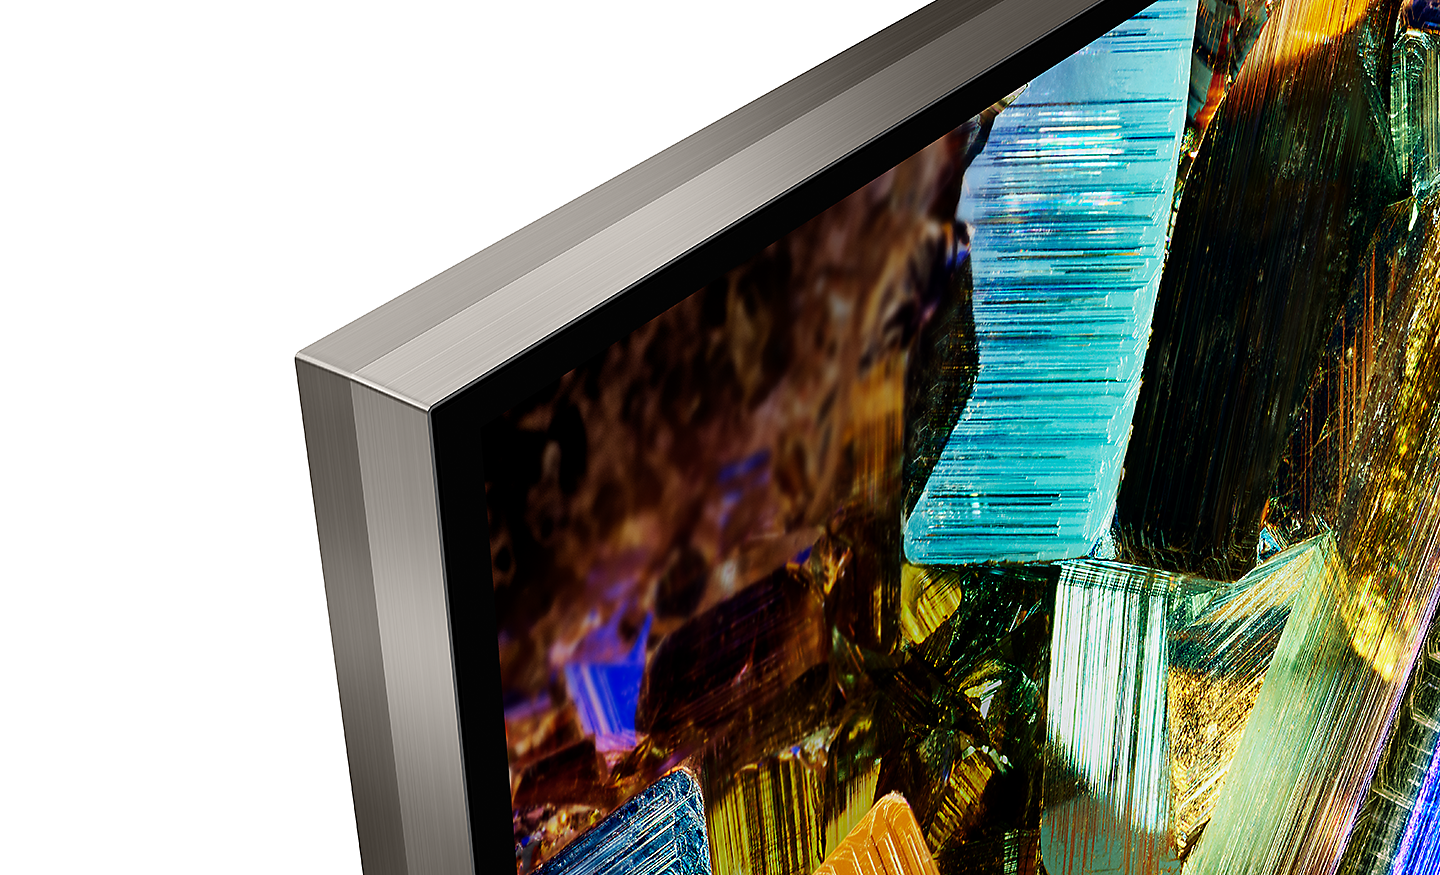 Detaljbilde av hjørnet av en BRAVIA-TV som viser det praktisk talt rammeløse designet med sømløs kant og et skjermbilde av fargerike esker